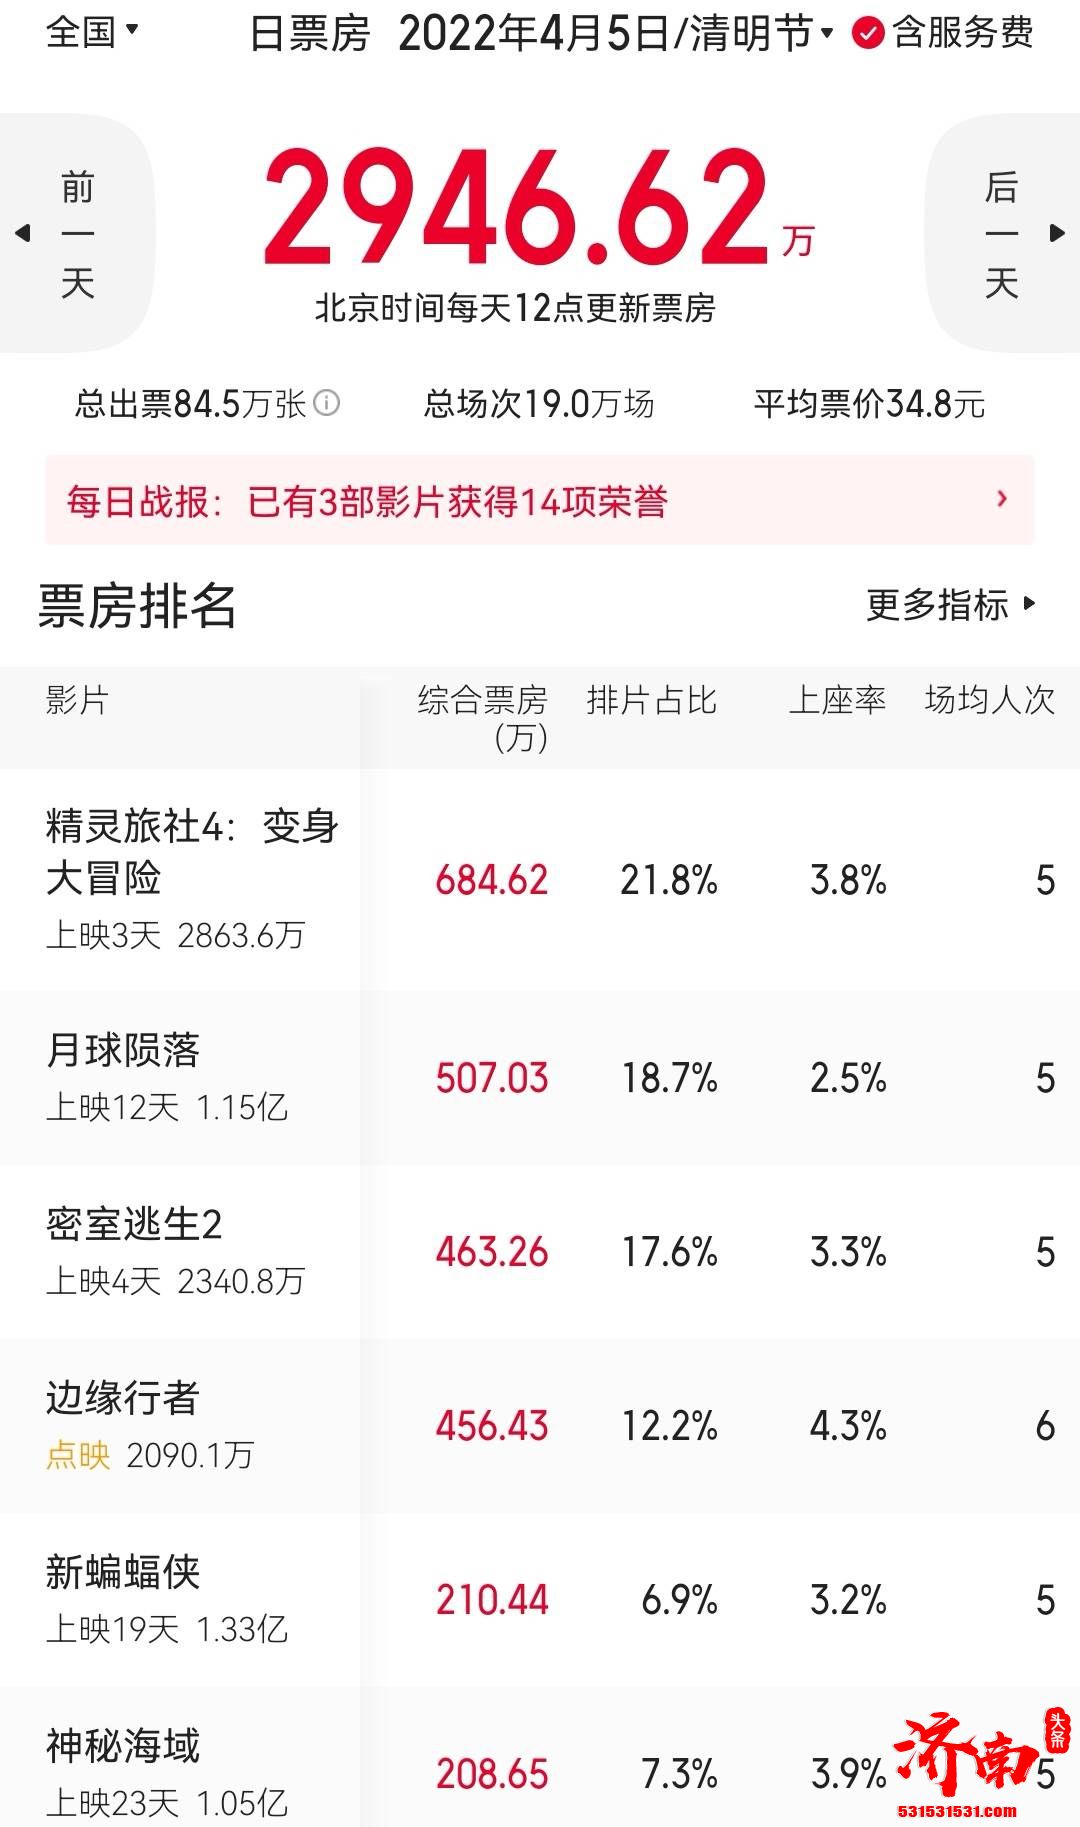 清明节假期档《精灵旅社4》夺冠 上映三天累计总票房约2900万元